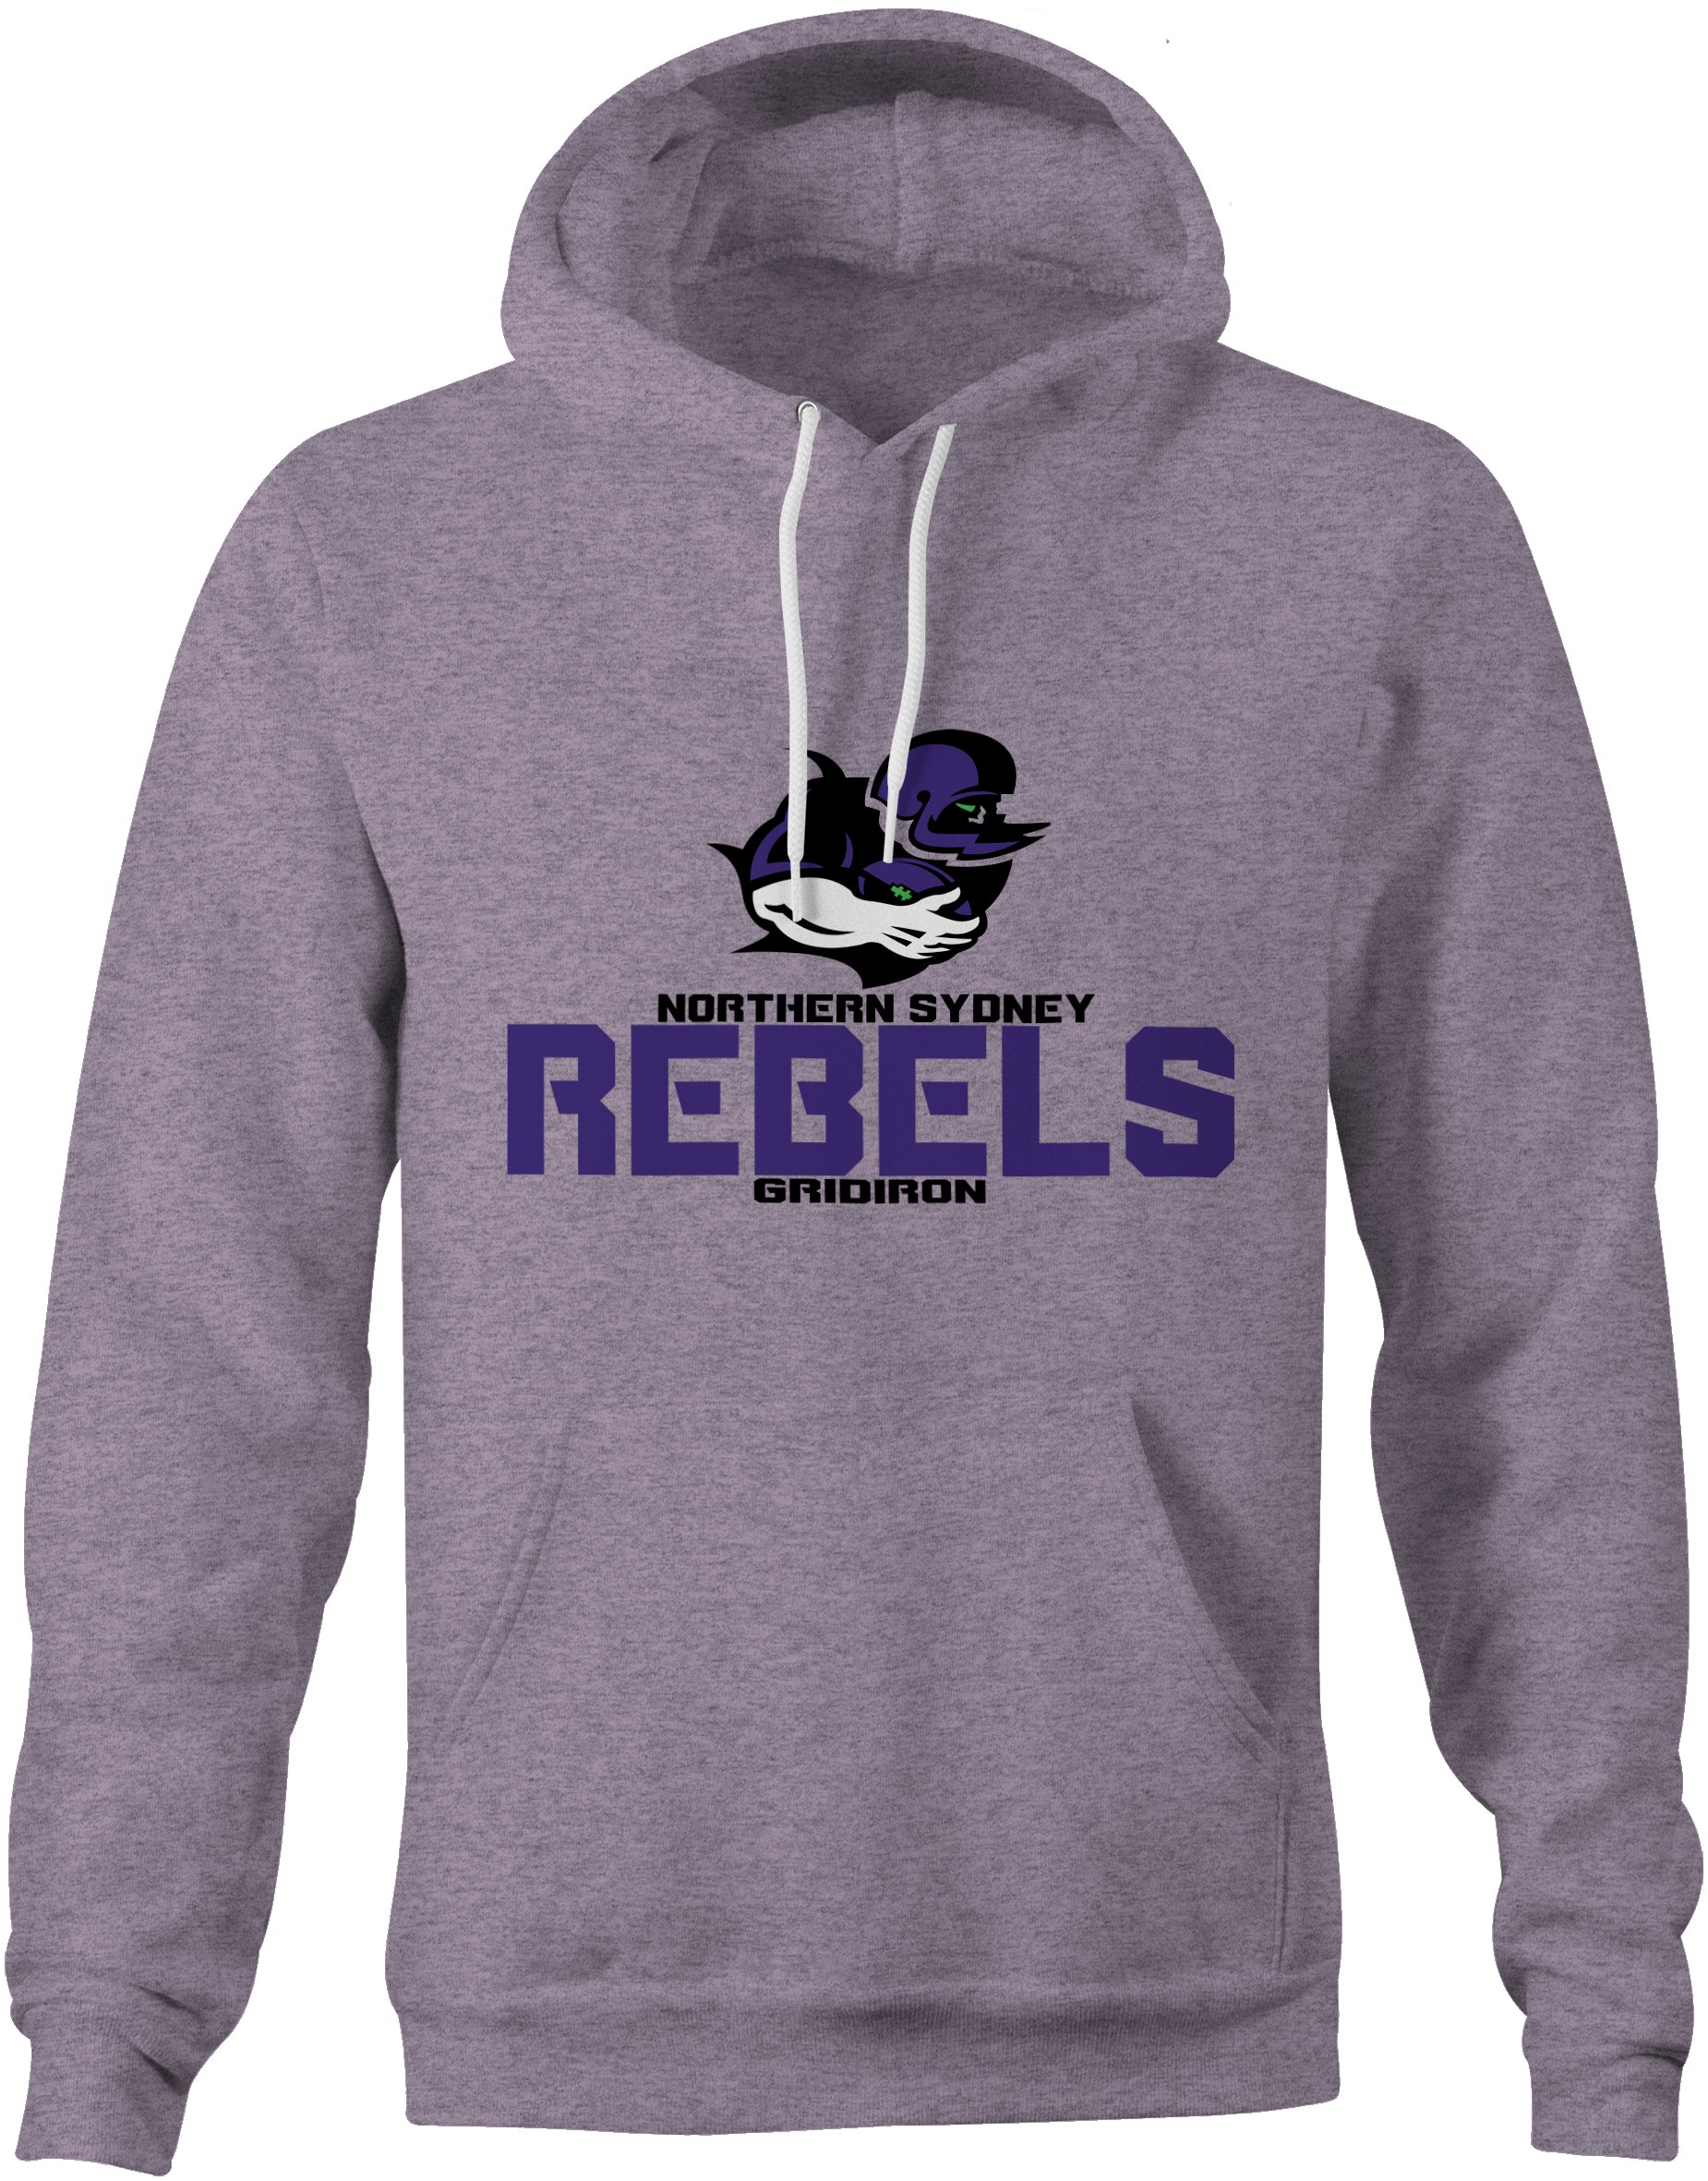 Rebels Gridiron Standard Hoodie